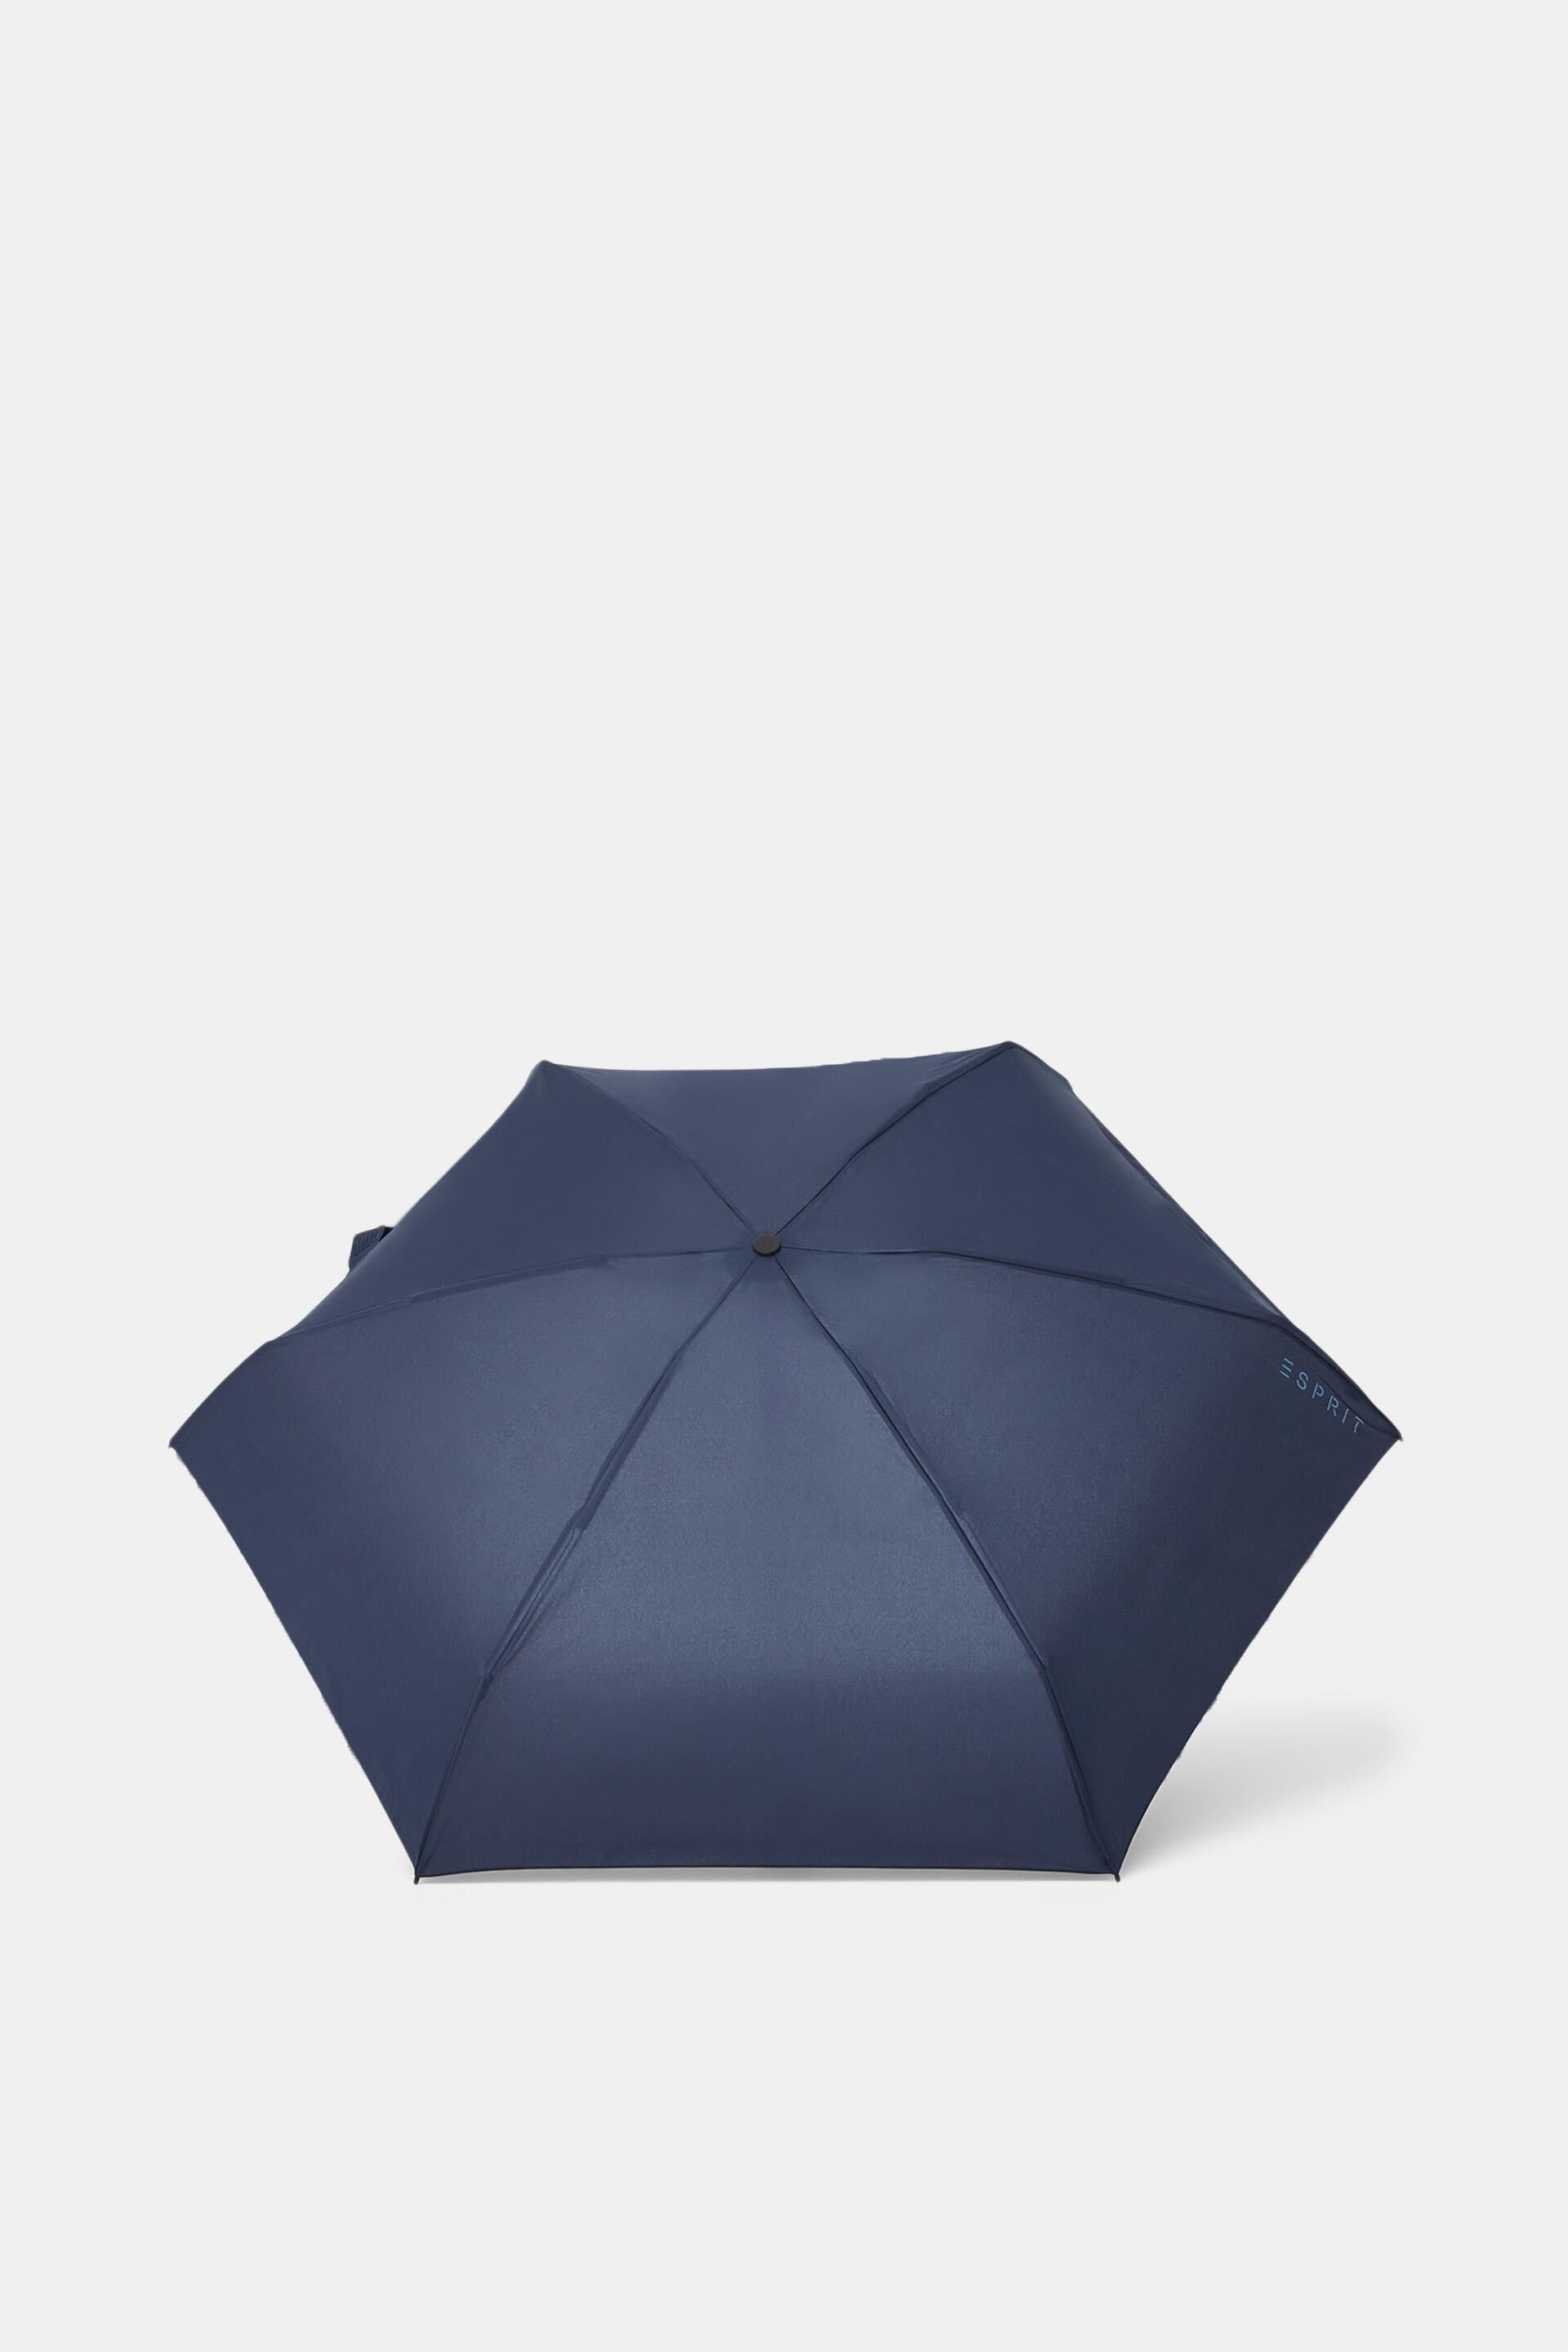 Parapluie de poche Ultra Mini Pouch Copper Stars Synthétique Esprit en coloris Violet Femme Accessoires Parapluies 